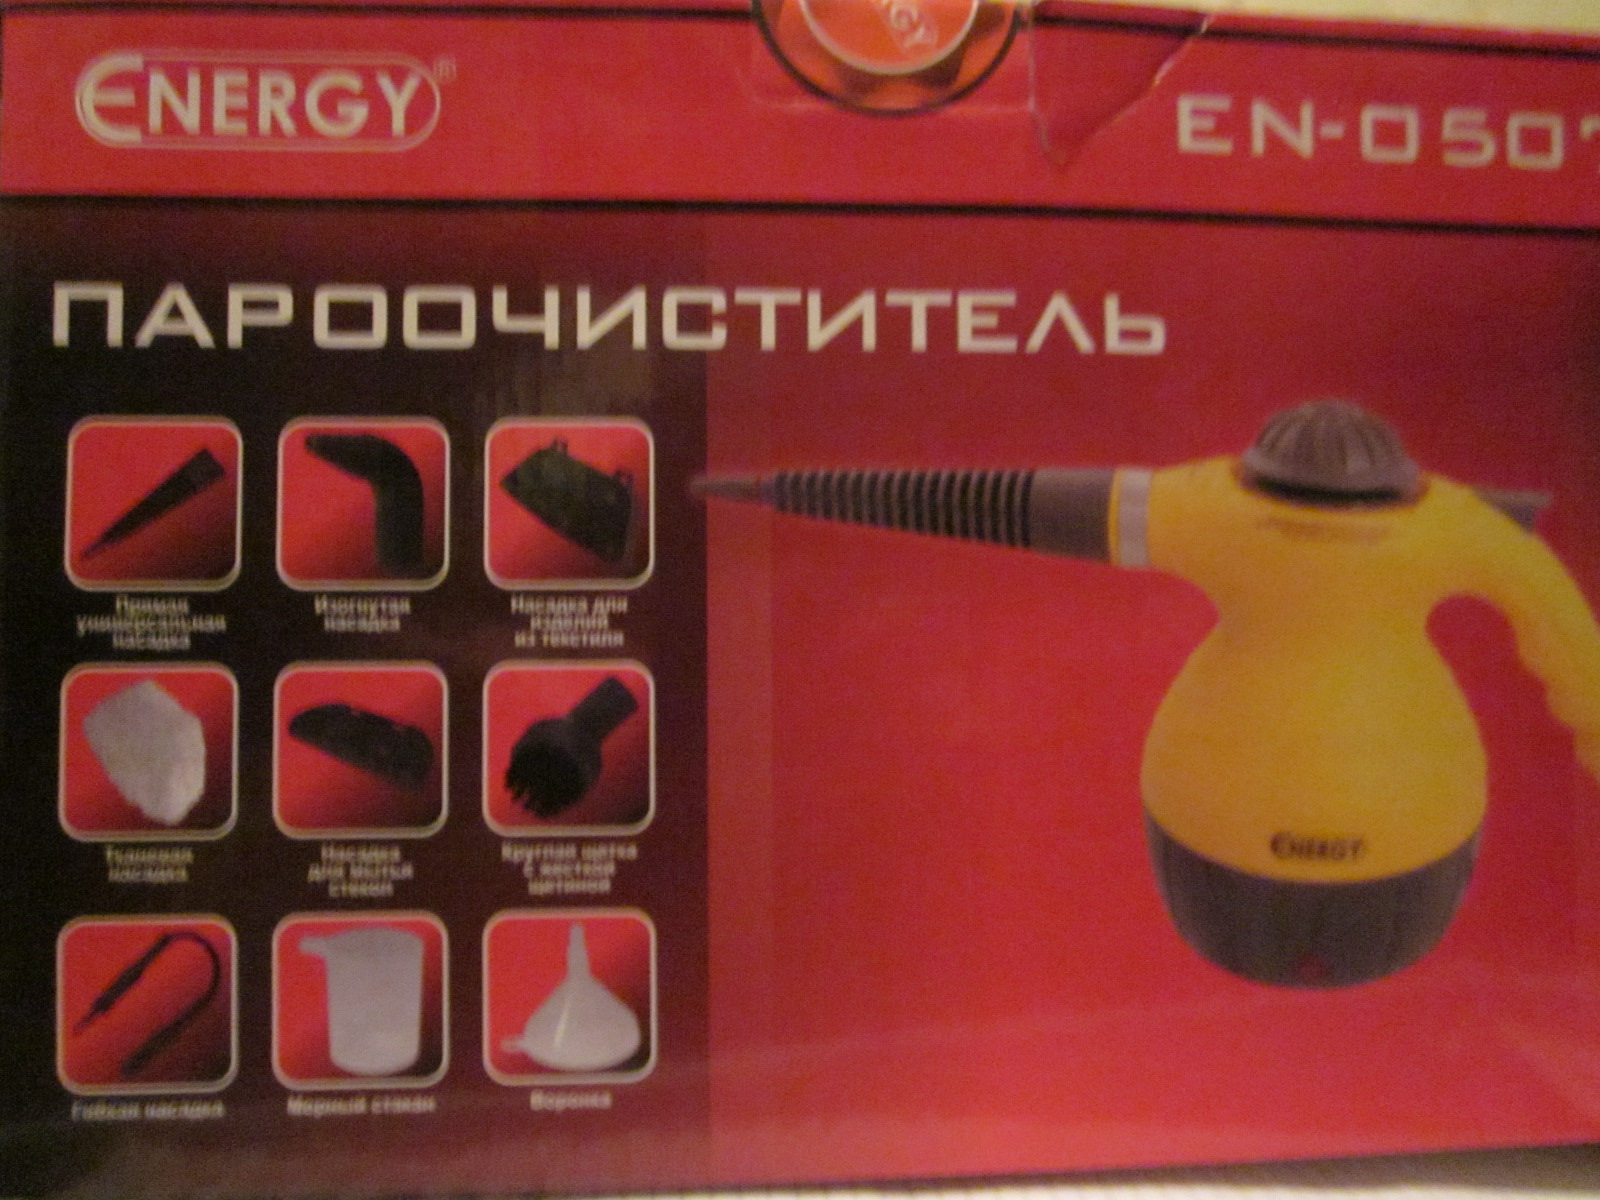 Пароочиститель Energy EN-0507 ручн...